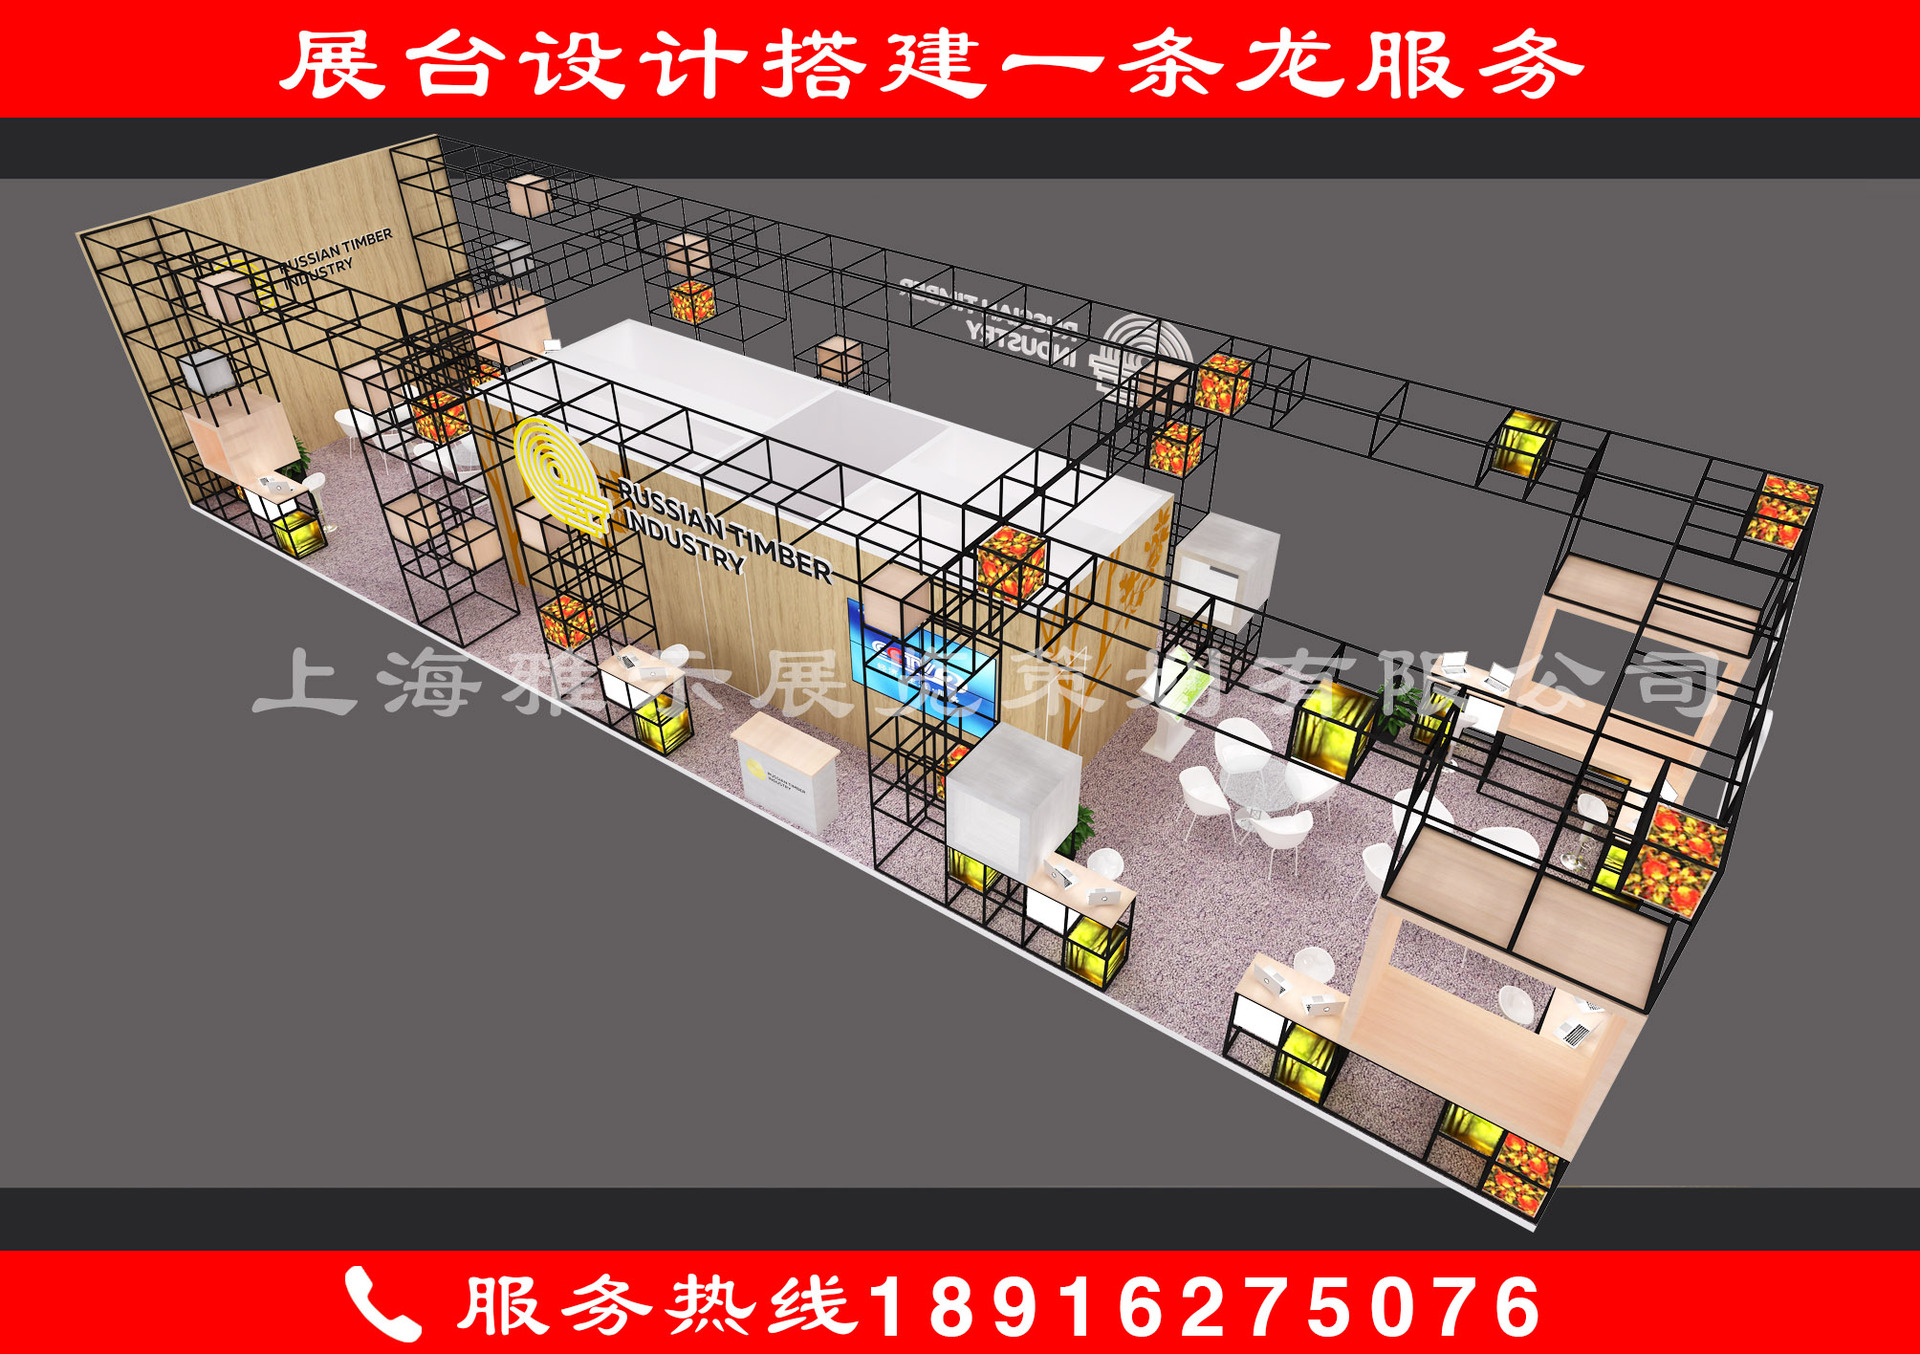 上海 展台 设计  搭建  展会 设计 特装 展会 搭建 光地 地板展